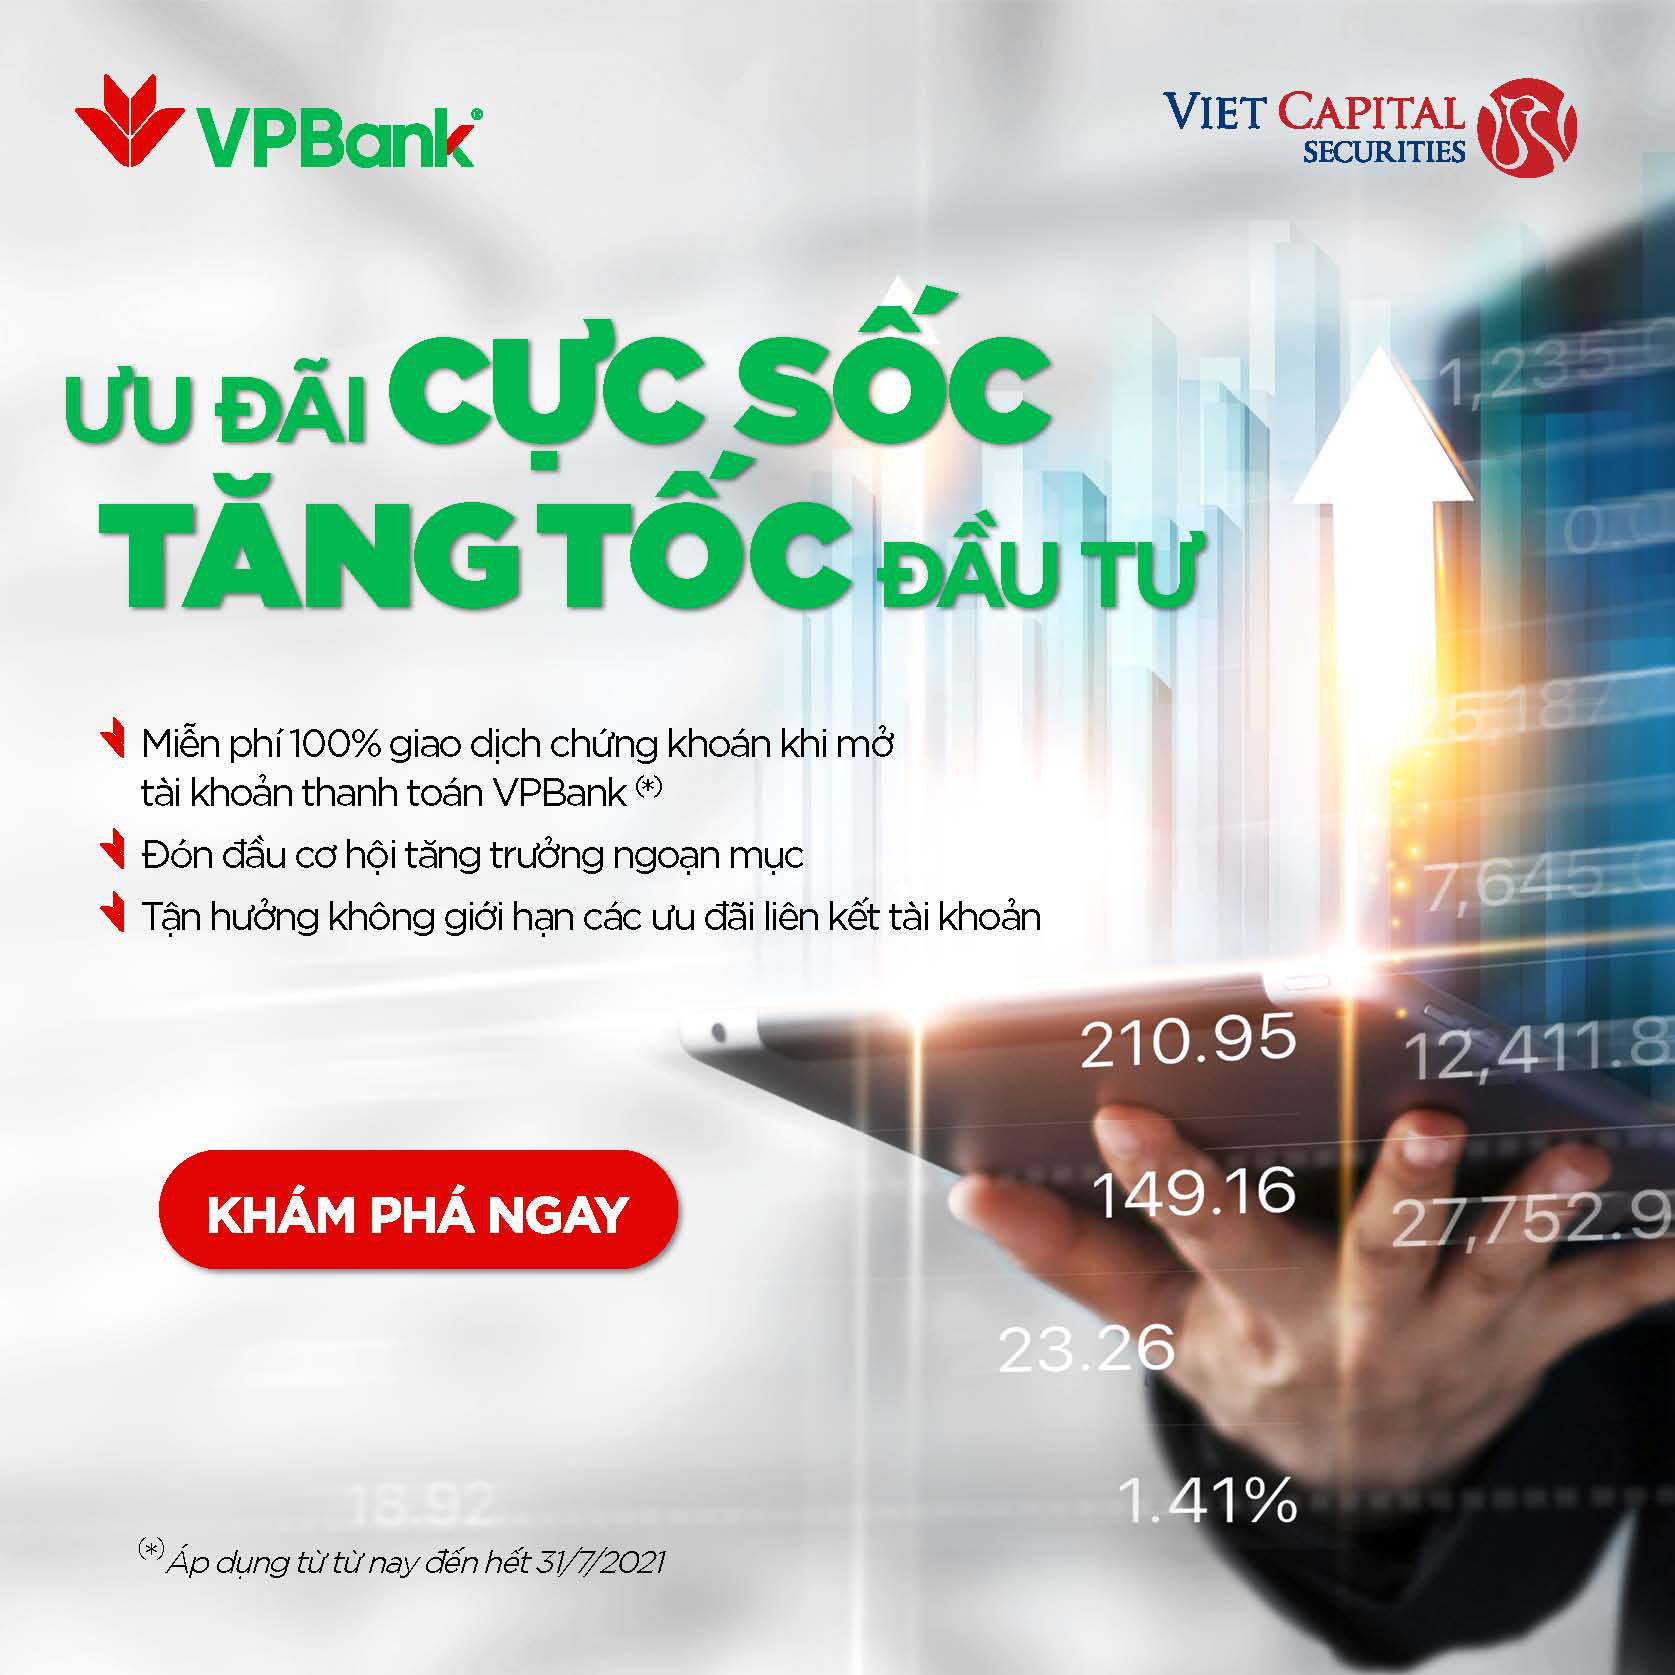 “Cú bắt tay” chiến lược giữa VCSC và VPBank cho trải nghiệm đầu tư 4.0 - Ảnh 1.